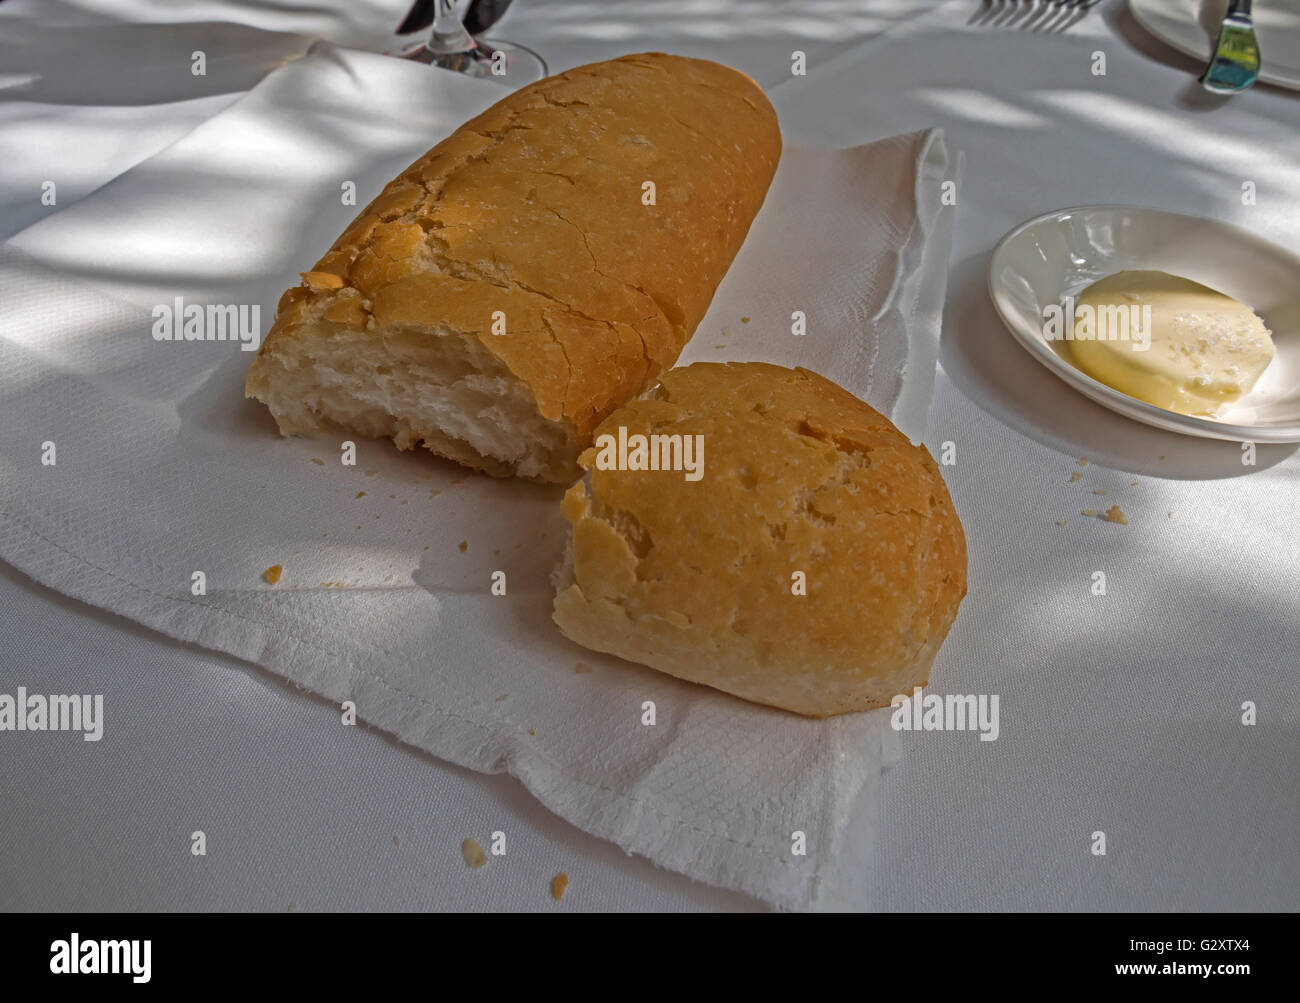 Crostini di pane bianco con un piatto di burro su una tovaglia bianca Foto Stock